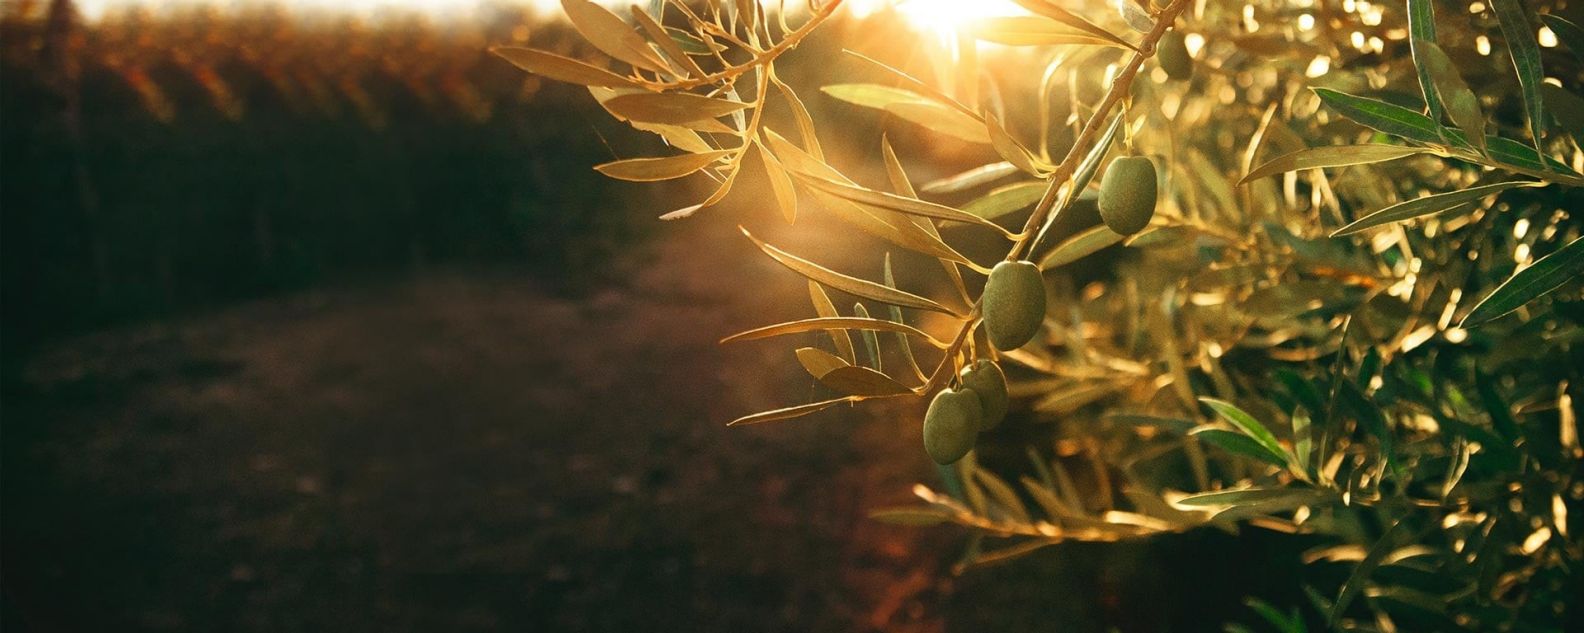 Un albero d'ulivo al tramonto 